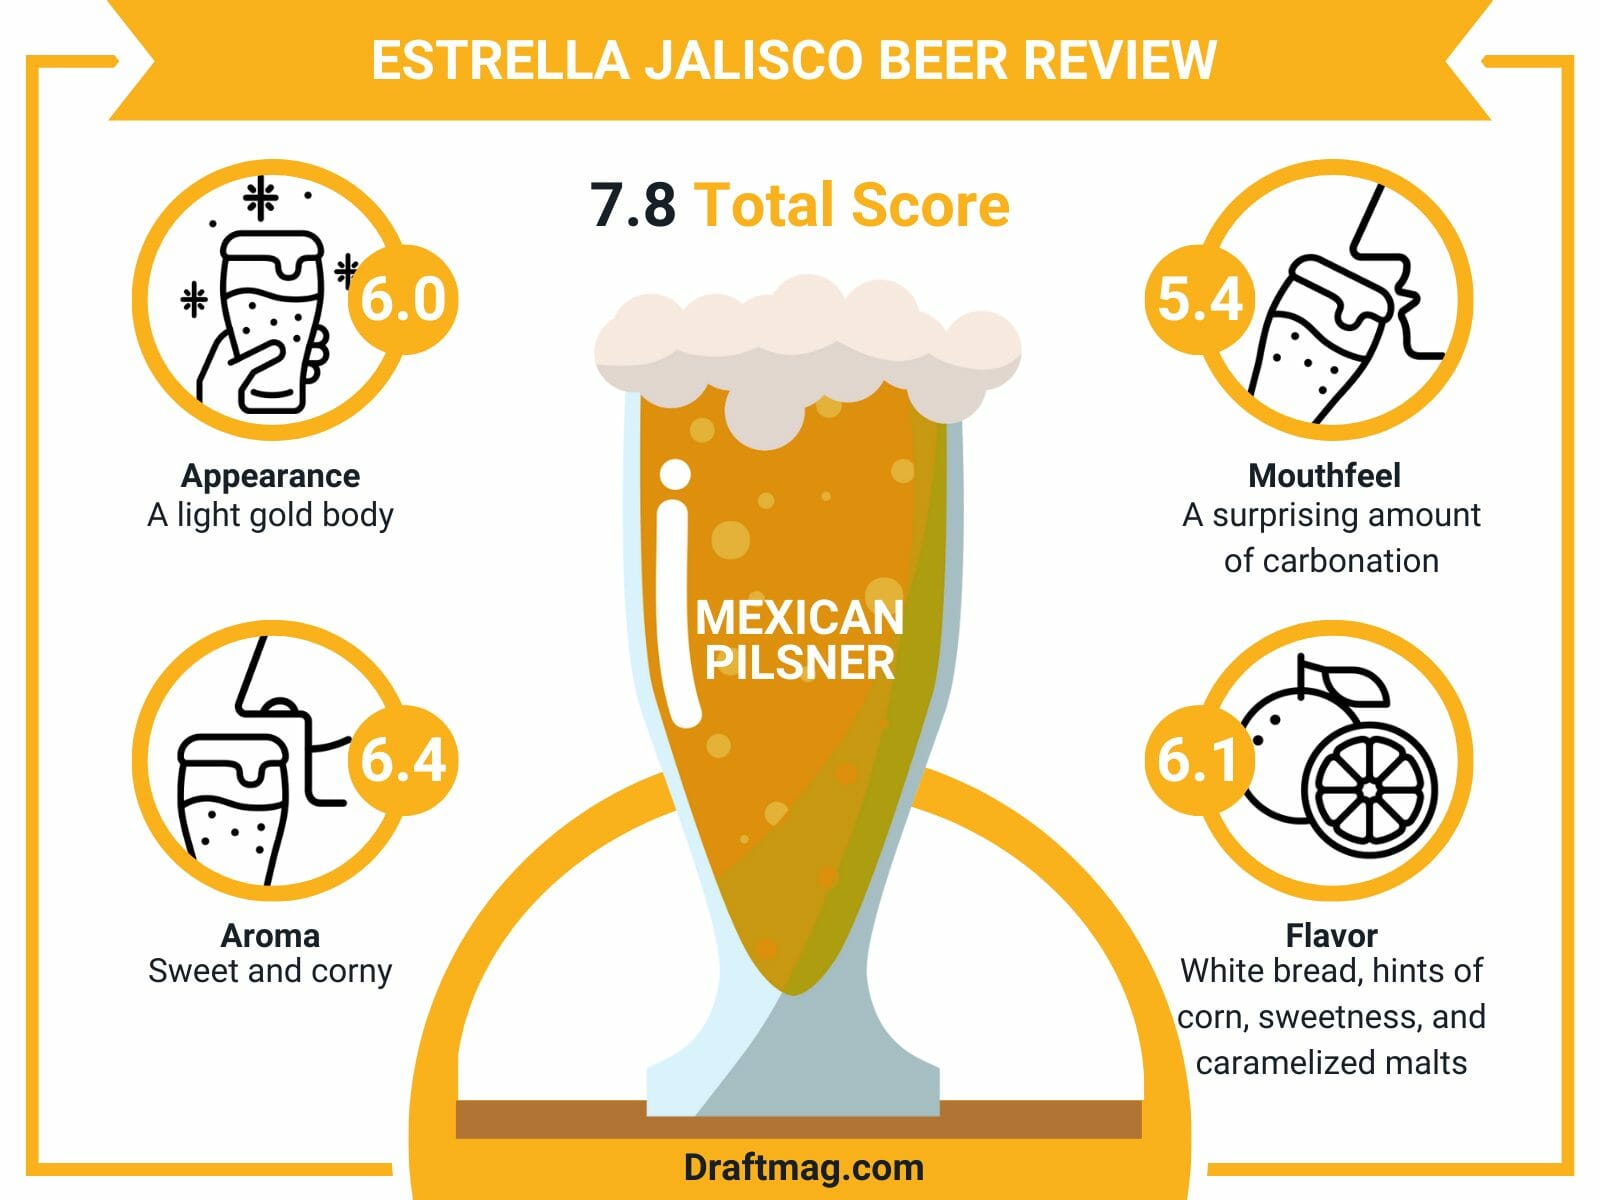 Estrella jalisco beer review infographic